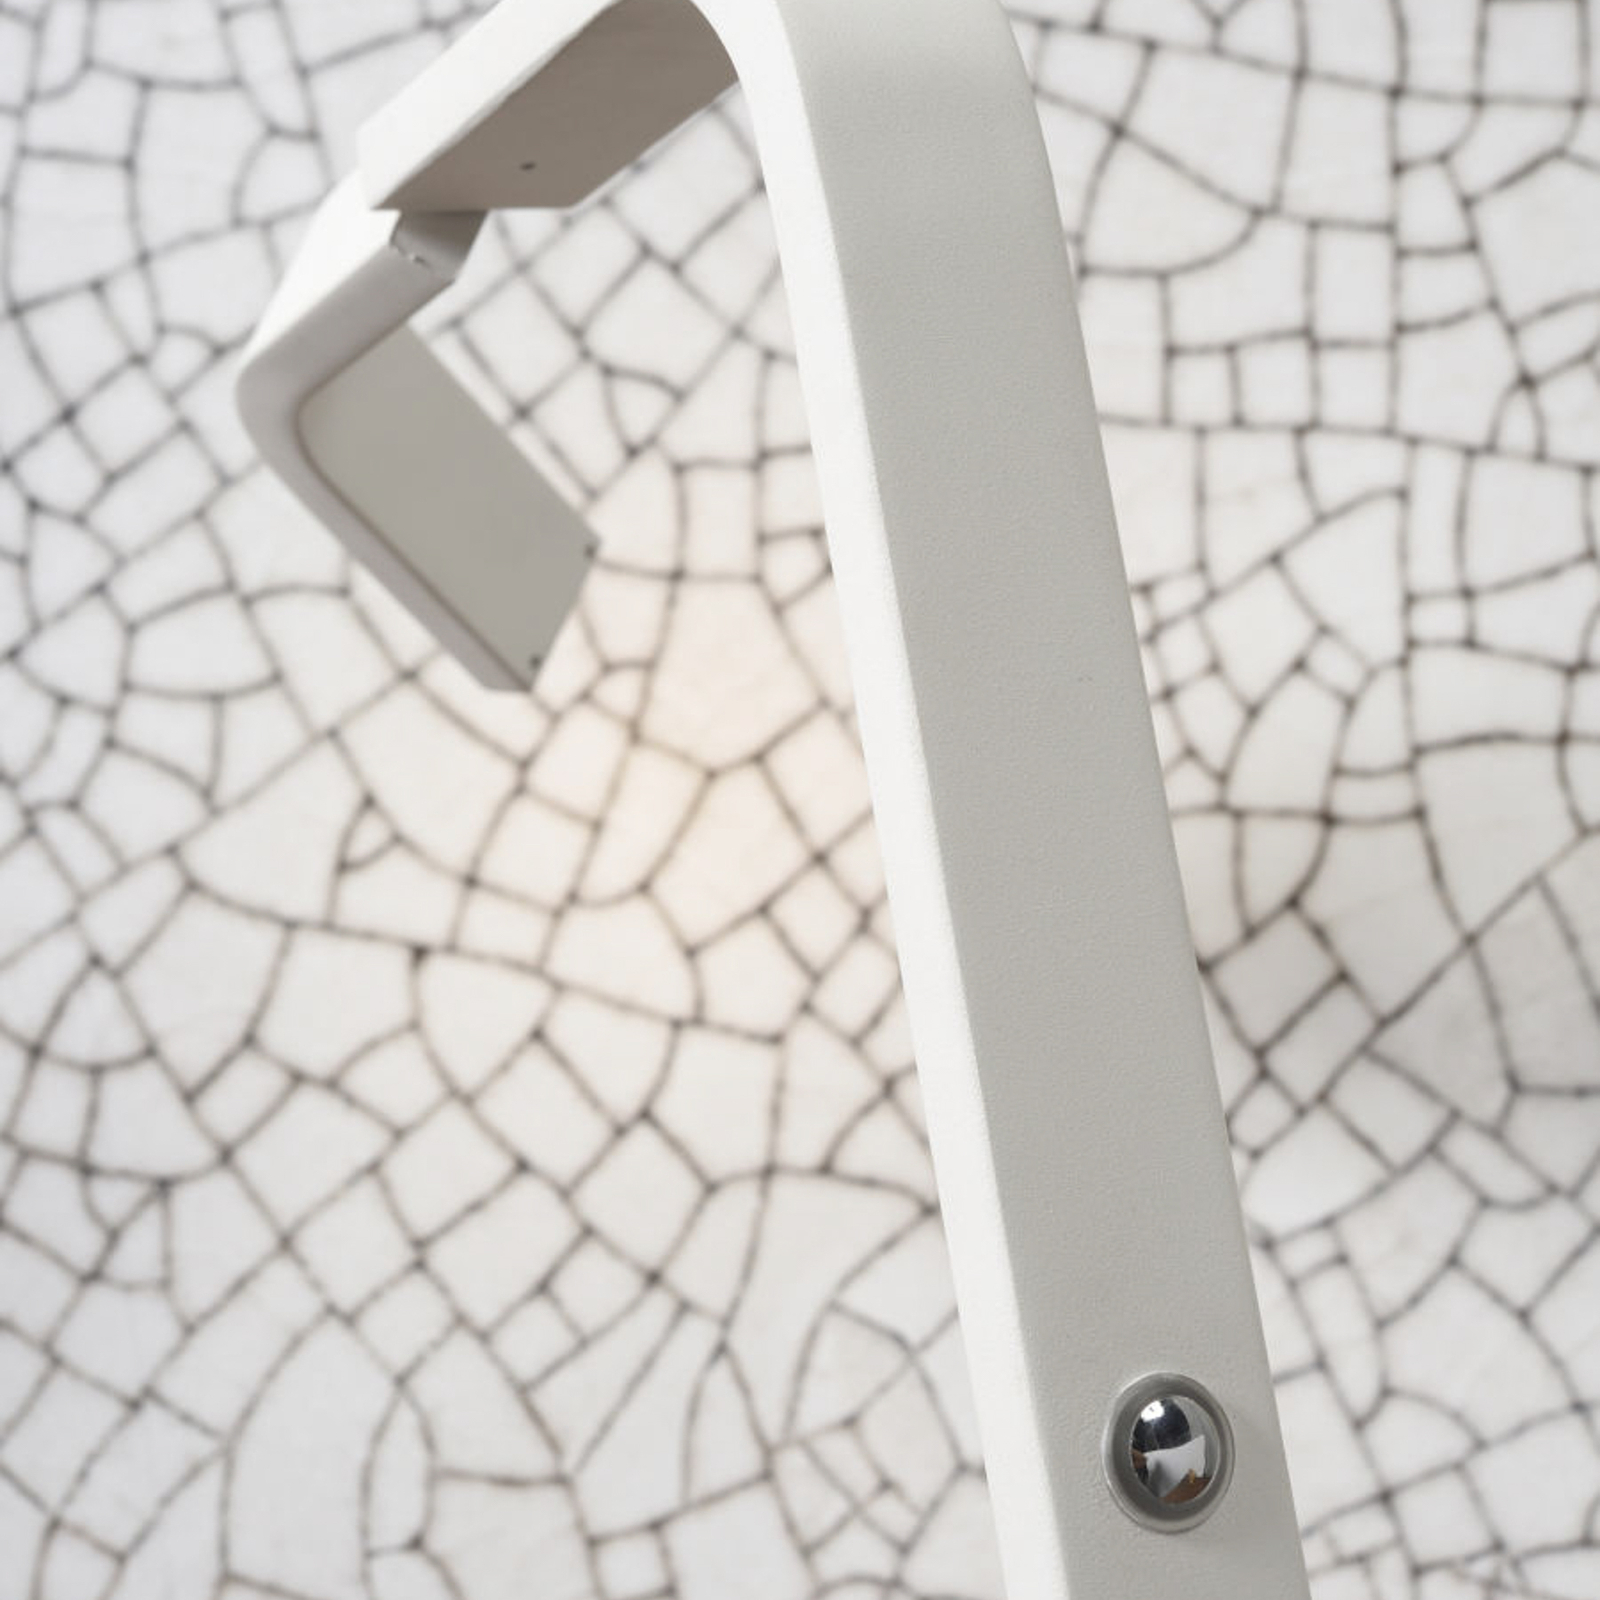 A RoMi Zurich LED-es asztali lámpáról van szó, fehér színben